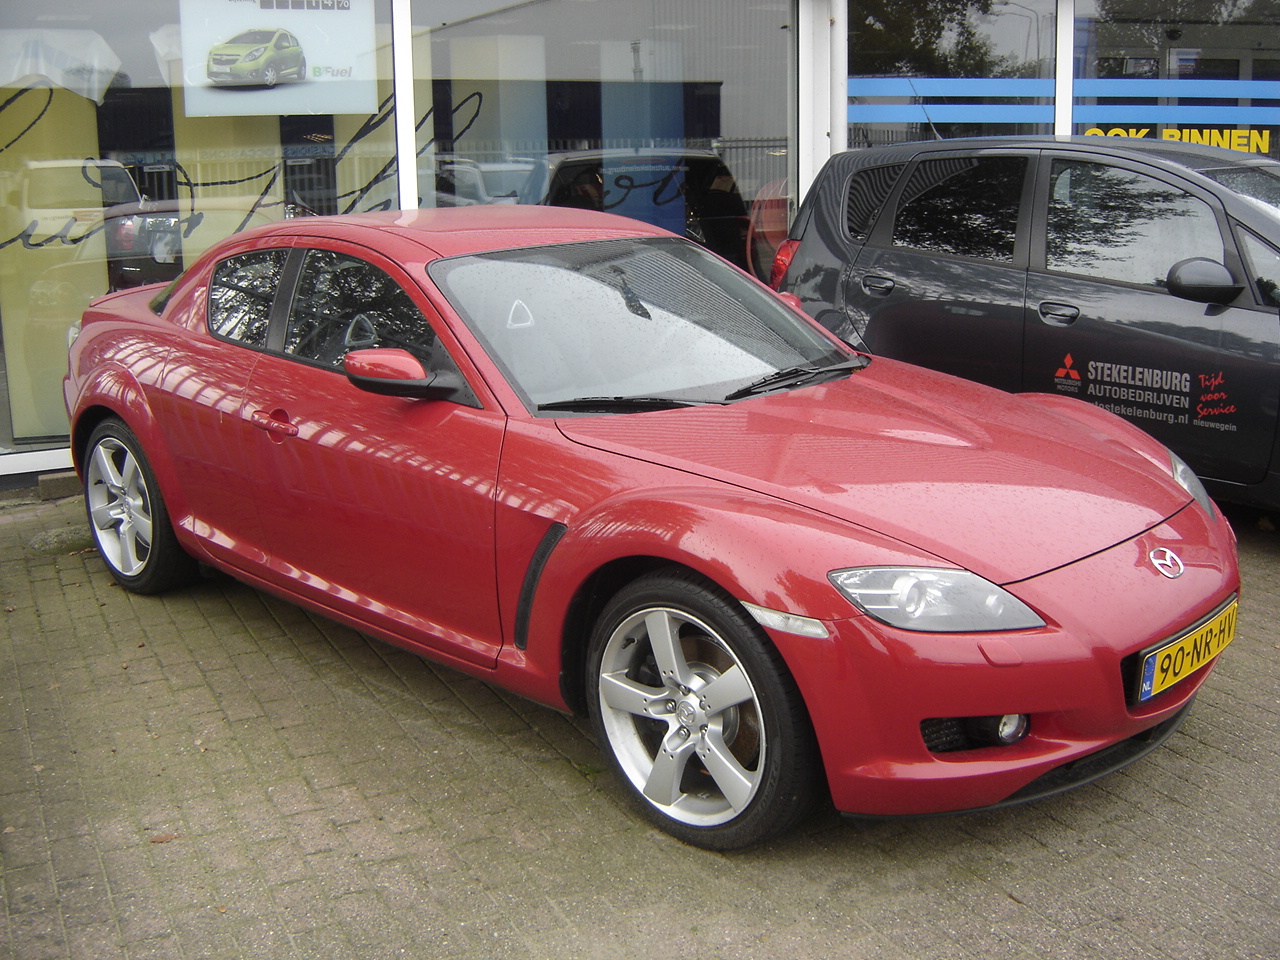 Nieuwegein: Mazda RX-8 2004 / Flickr - Partage de photos!